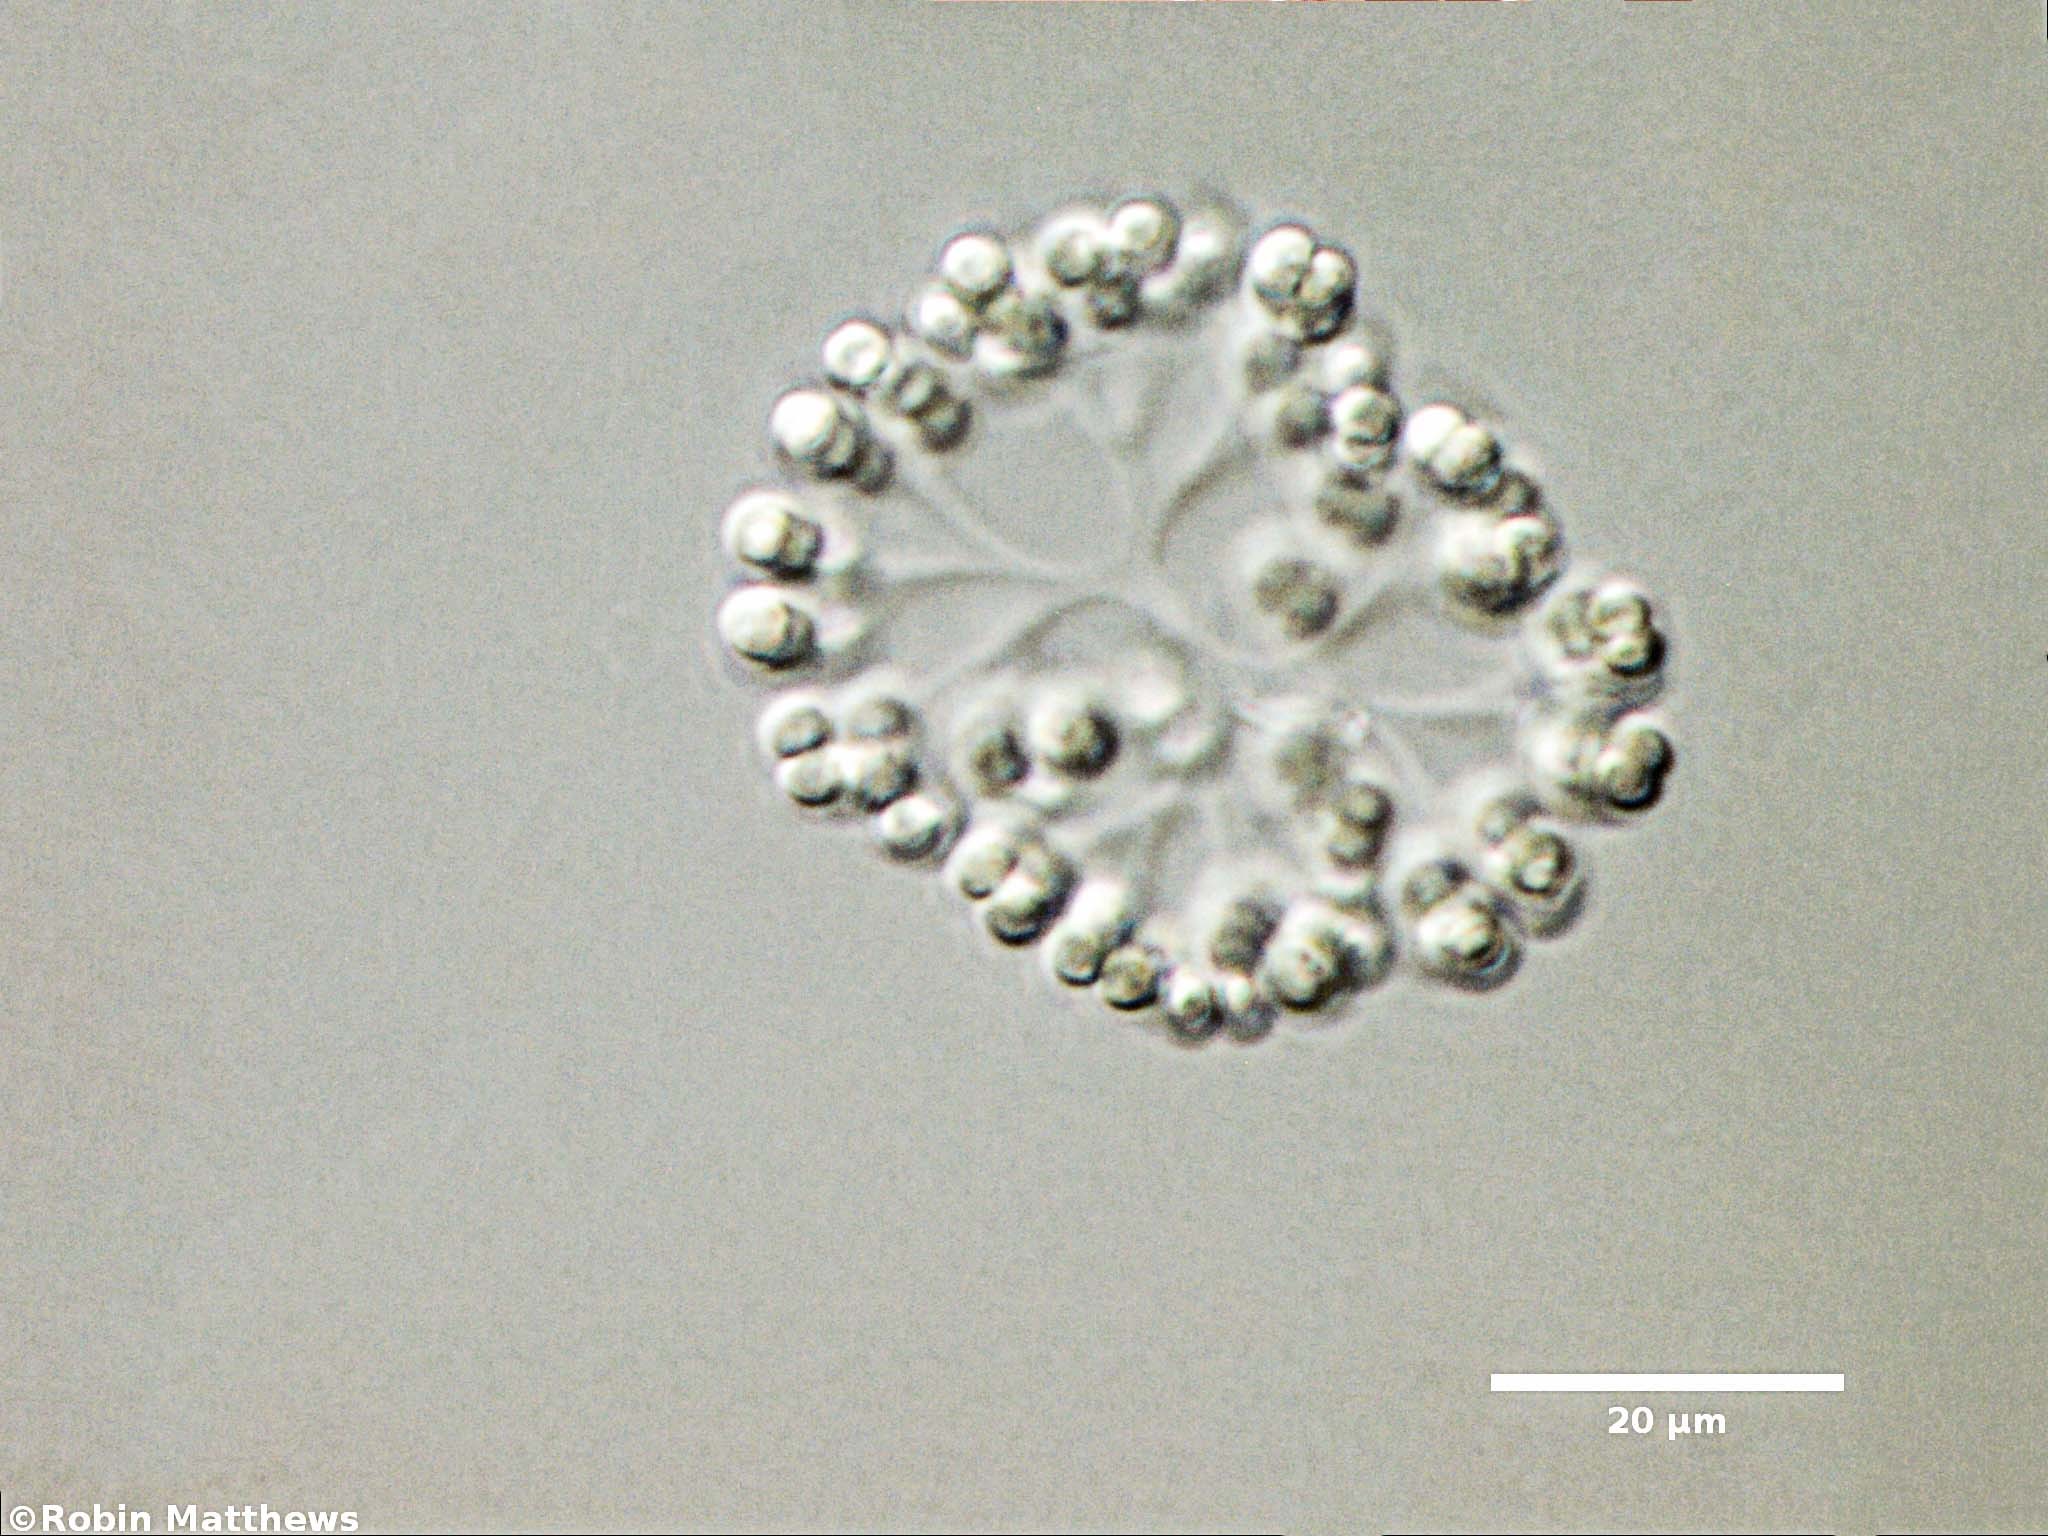 Cyanobacteria/Synechococcales/Coleosphaeriaceae/Snowella/litoralis/snowella-litoralis-102.jpg